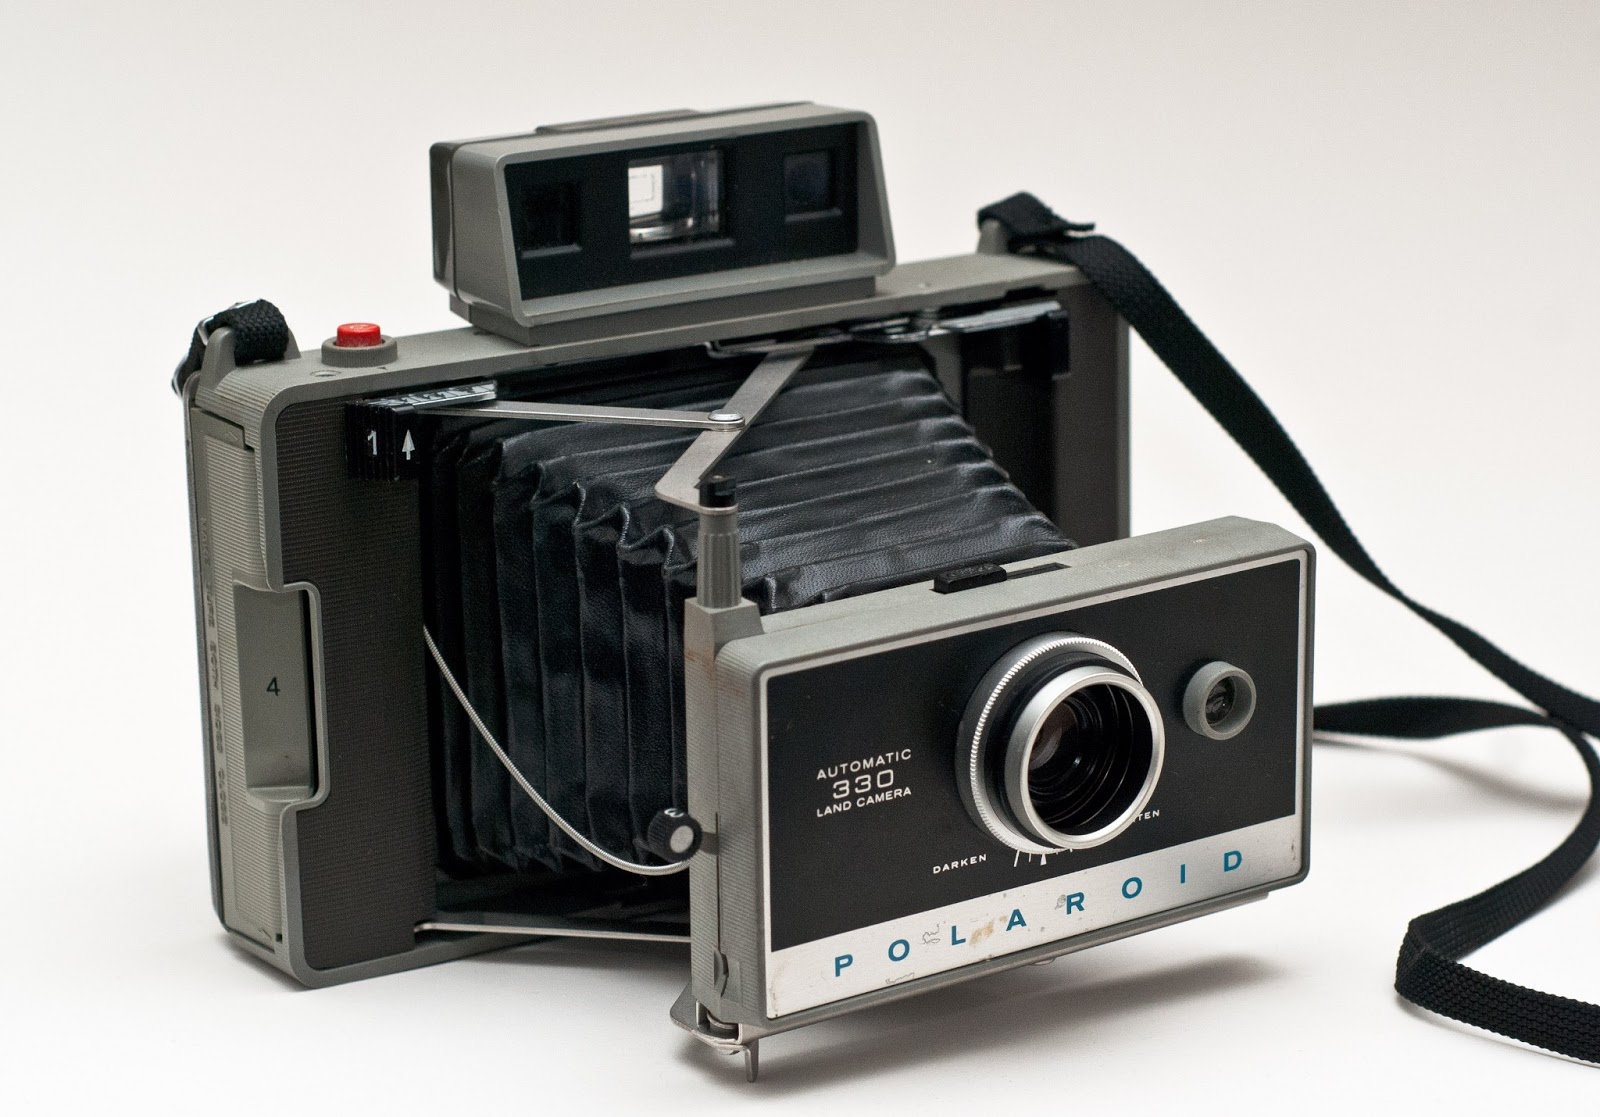 Первый фотоаппарат. Полароид 1963 фотоаппарат. Первый фотоаппарат Polaroid 1963. Фотоаппарат Polaroid x530. Polaroid 900 фотоаппарат.